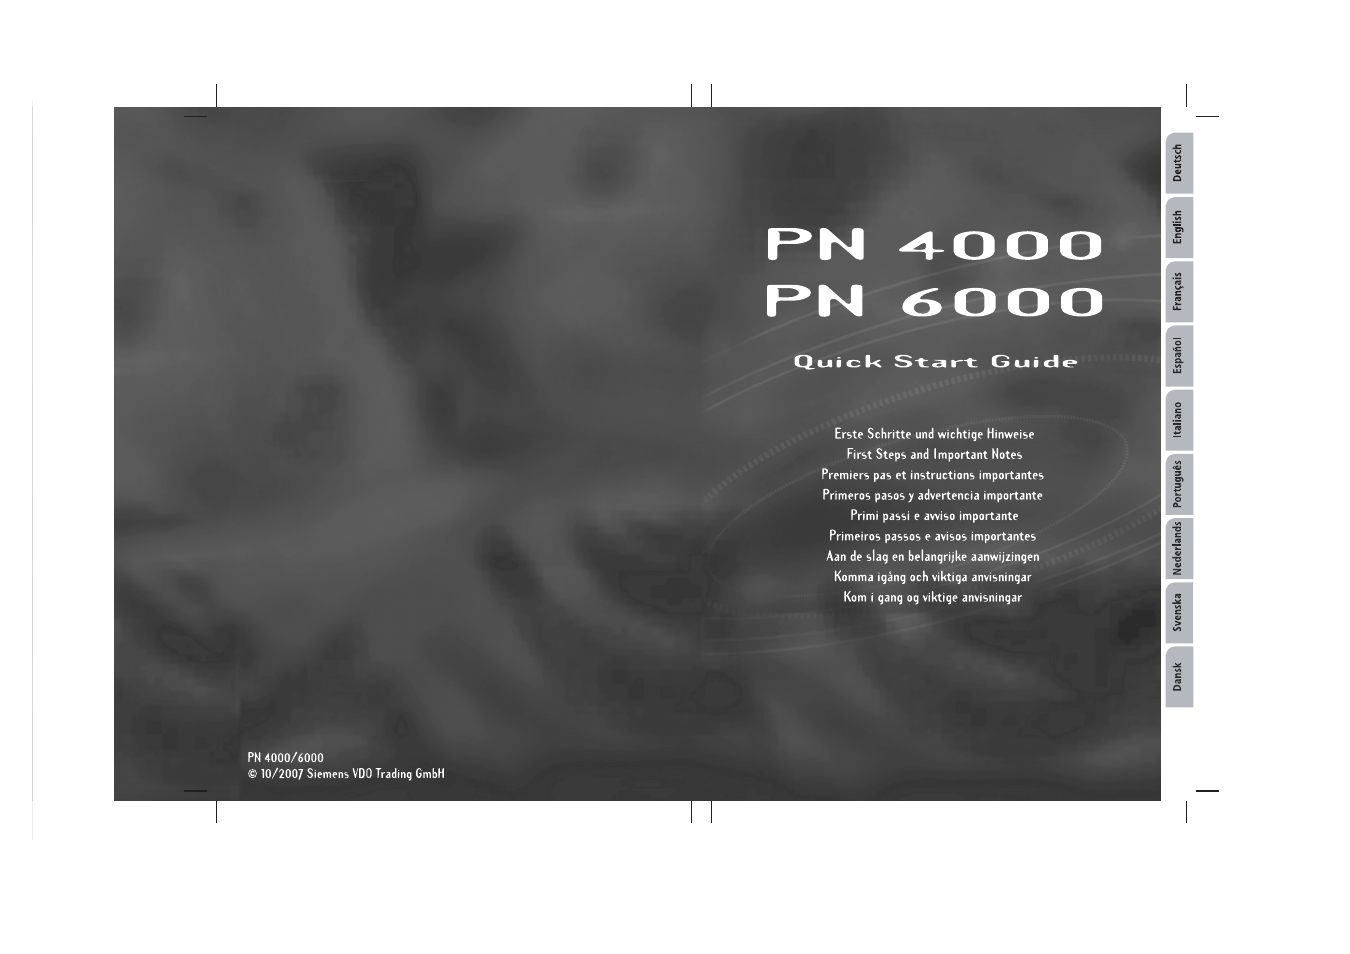 PN 4000